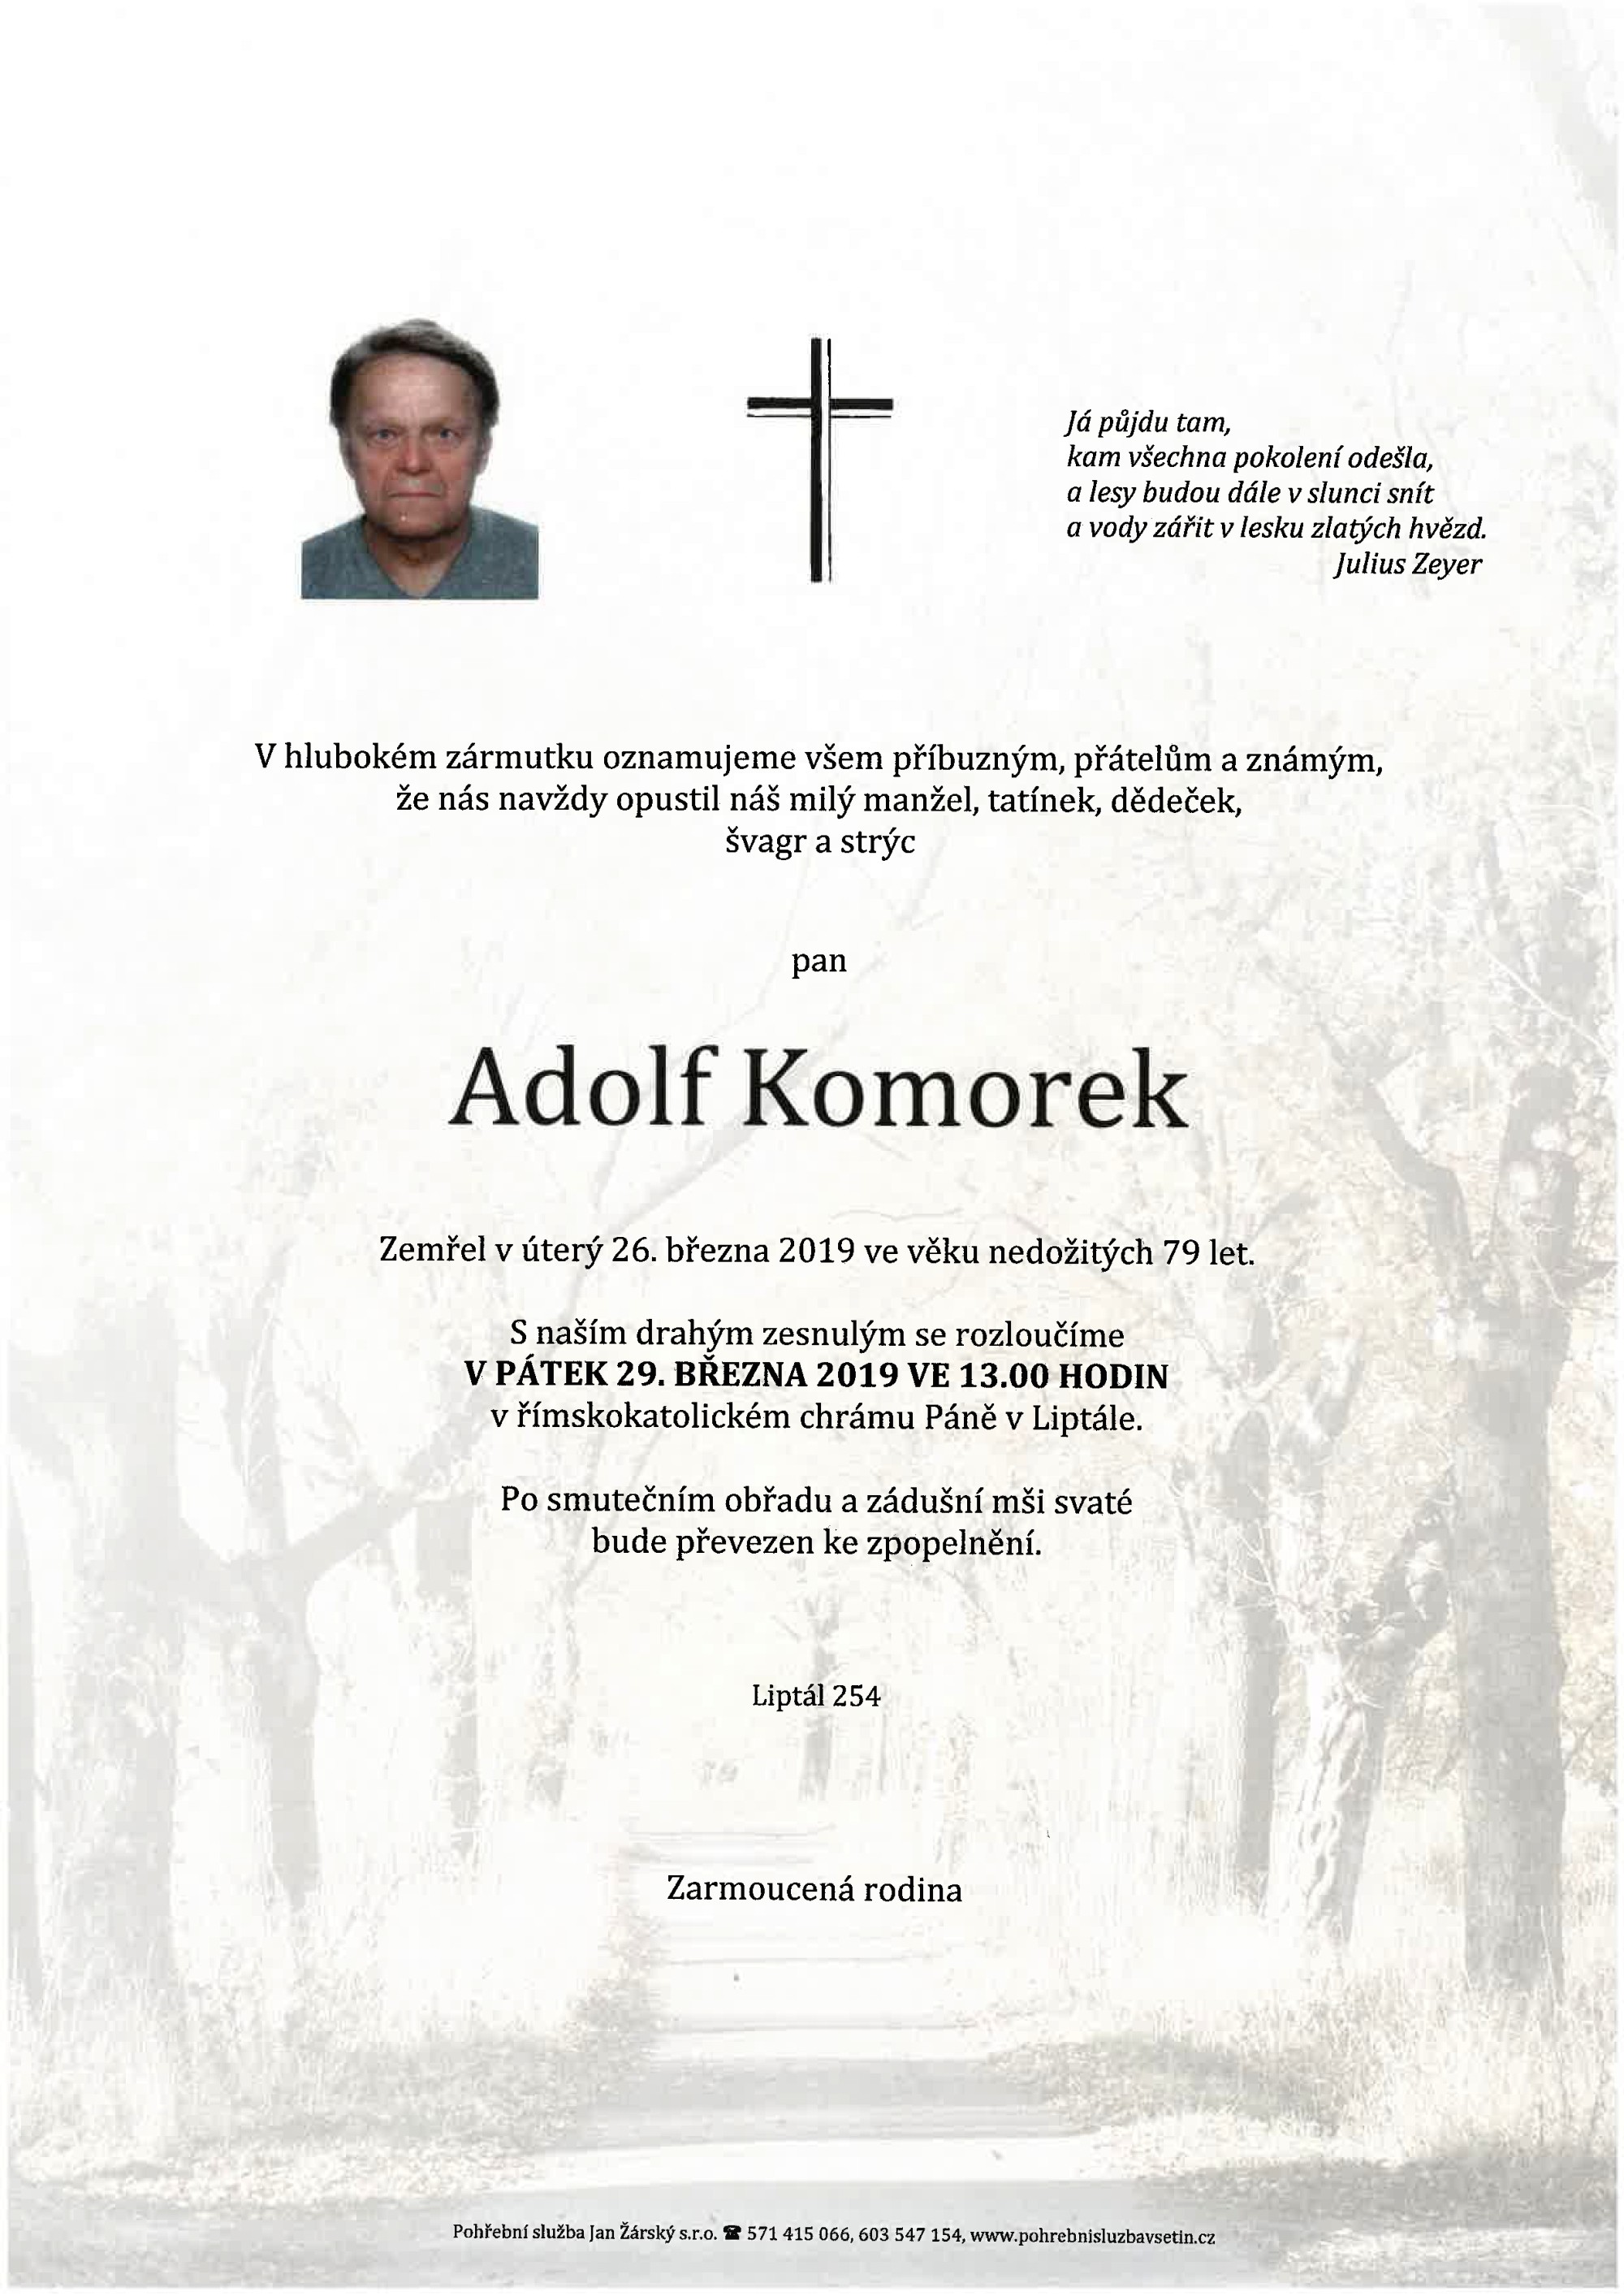 Adolf Komorek